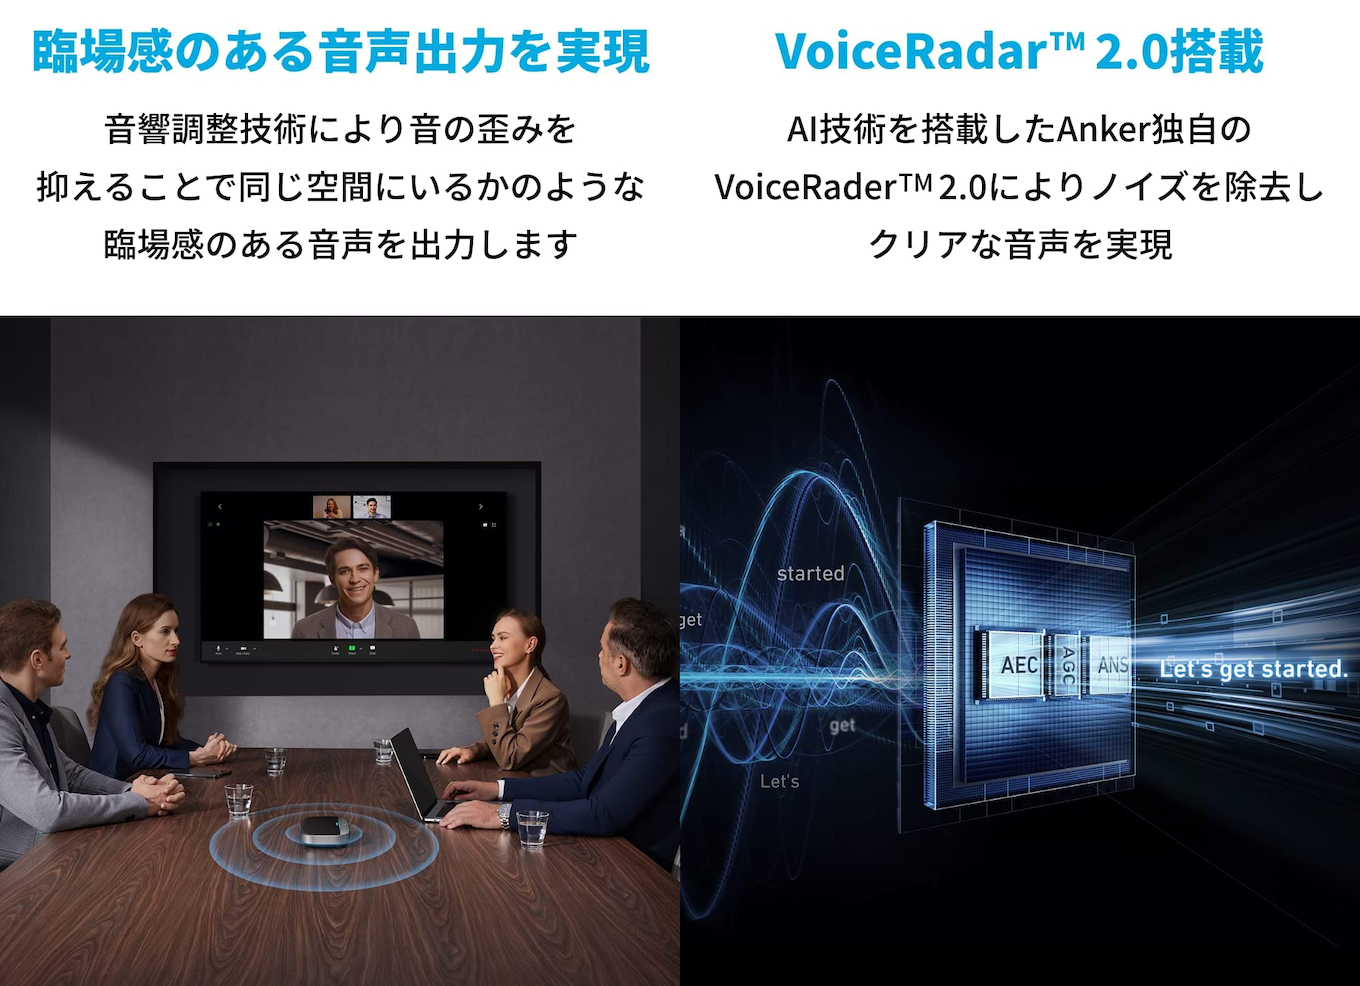 VoiceRadar 2.0